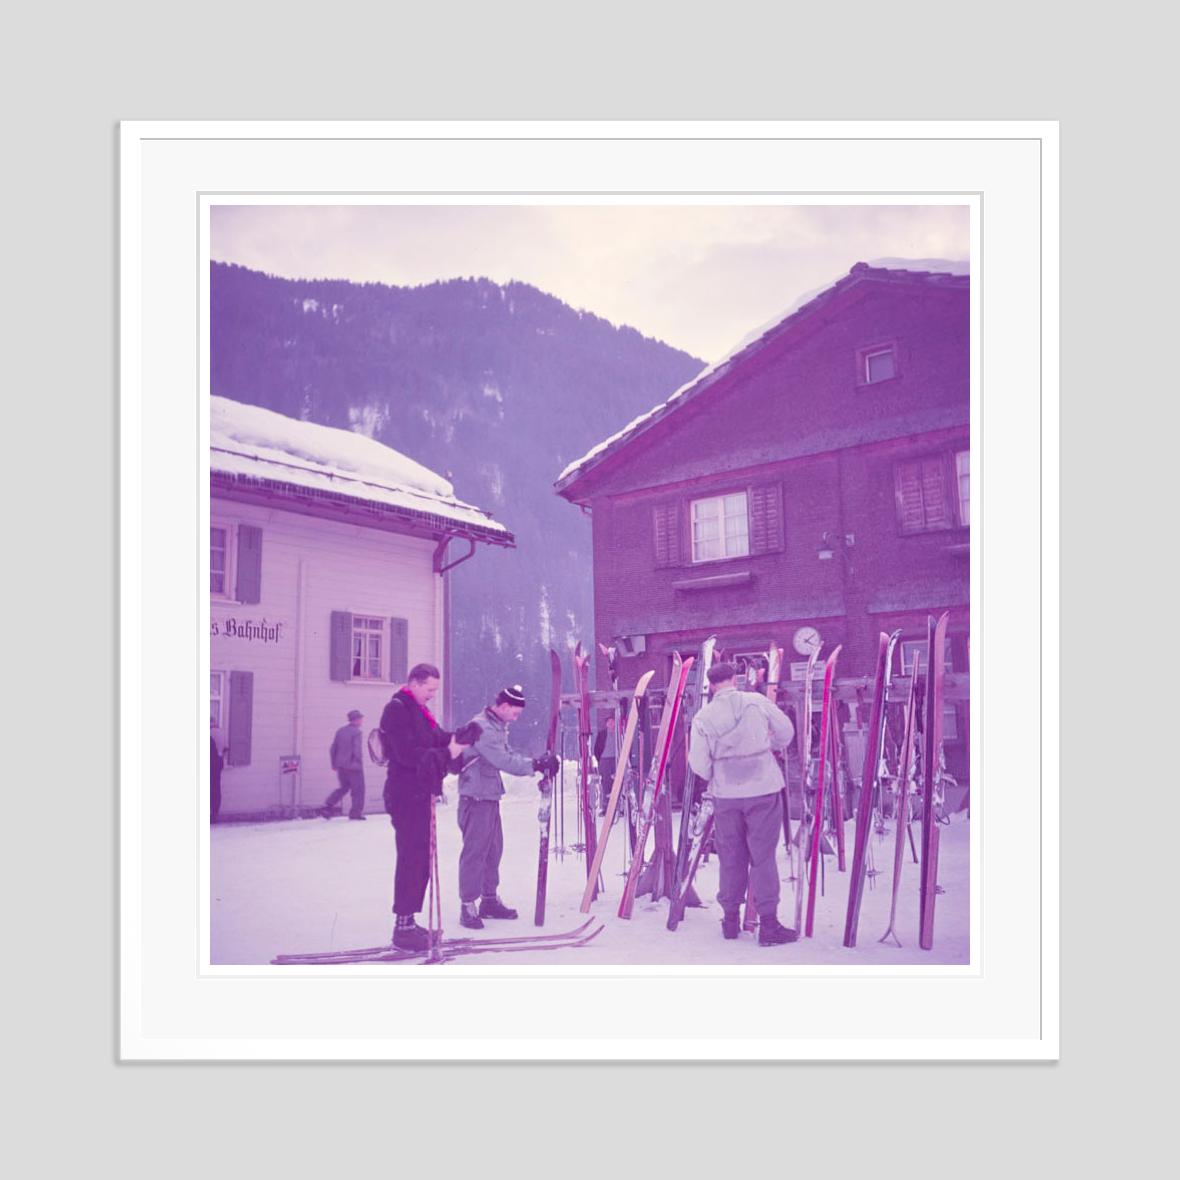 Bahnhof der Alpenbahn 

1951

Aufgestapelte Skier vor einer Alpenbahnstation, Klosters, Schweiz, 1951. 

von Toni Frissell

30 x 30